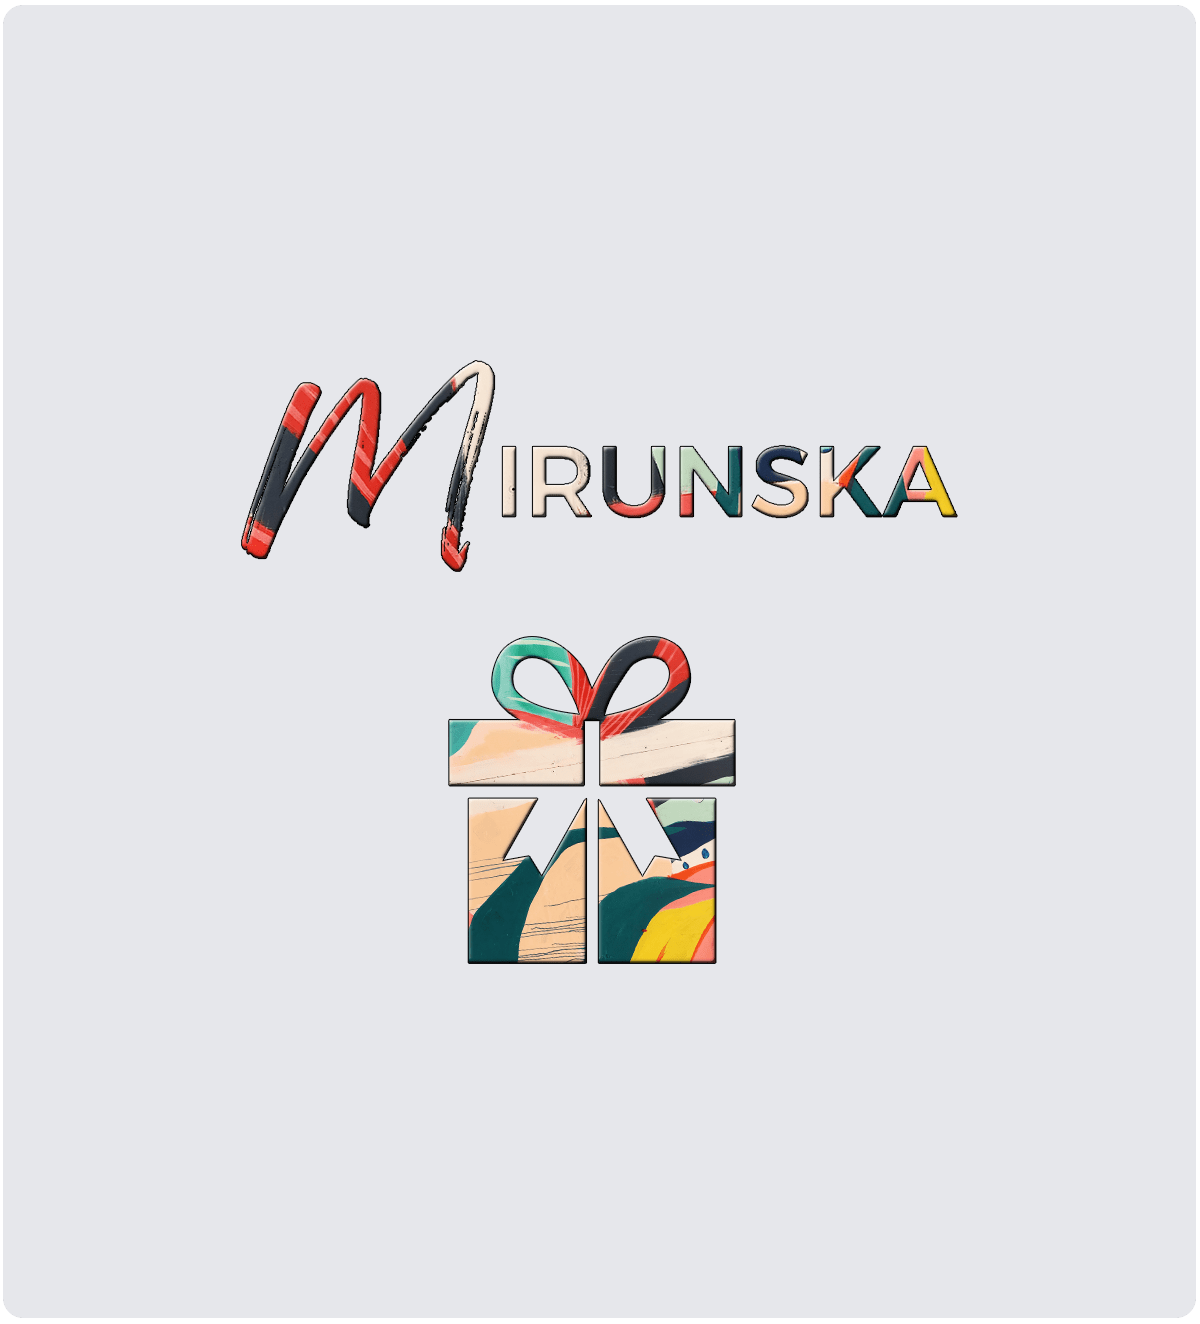 Mirunska.com ajándékkártya